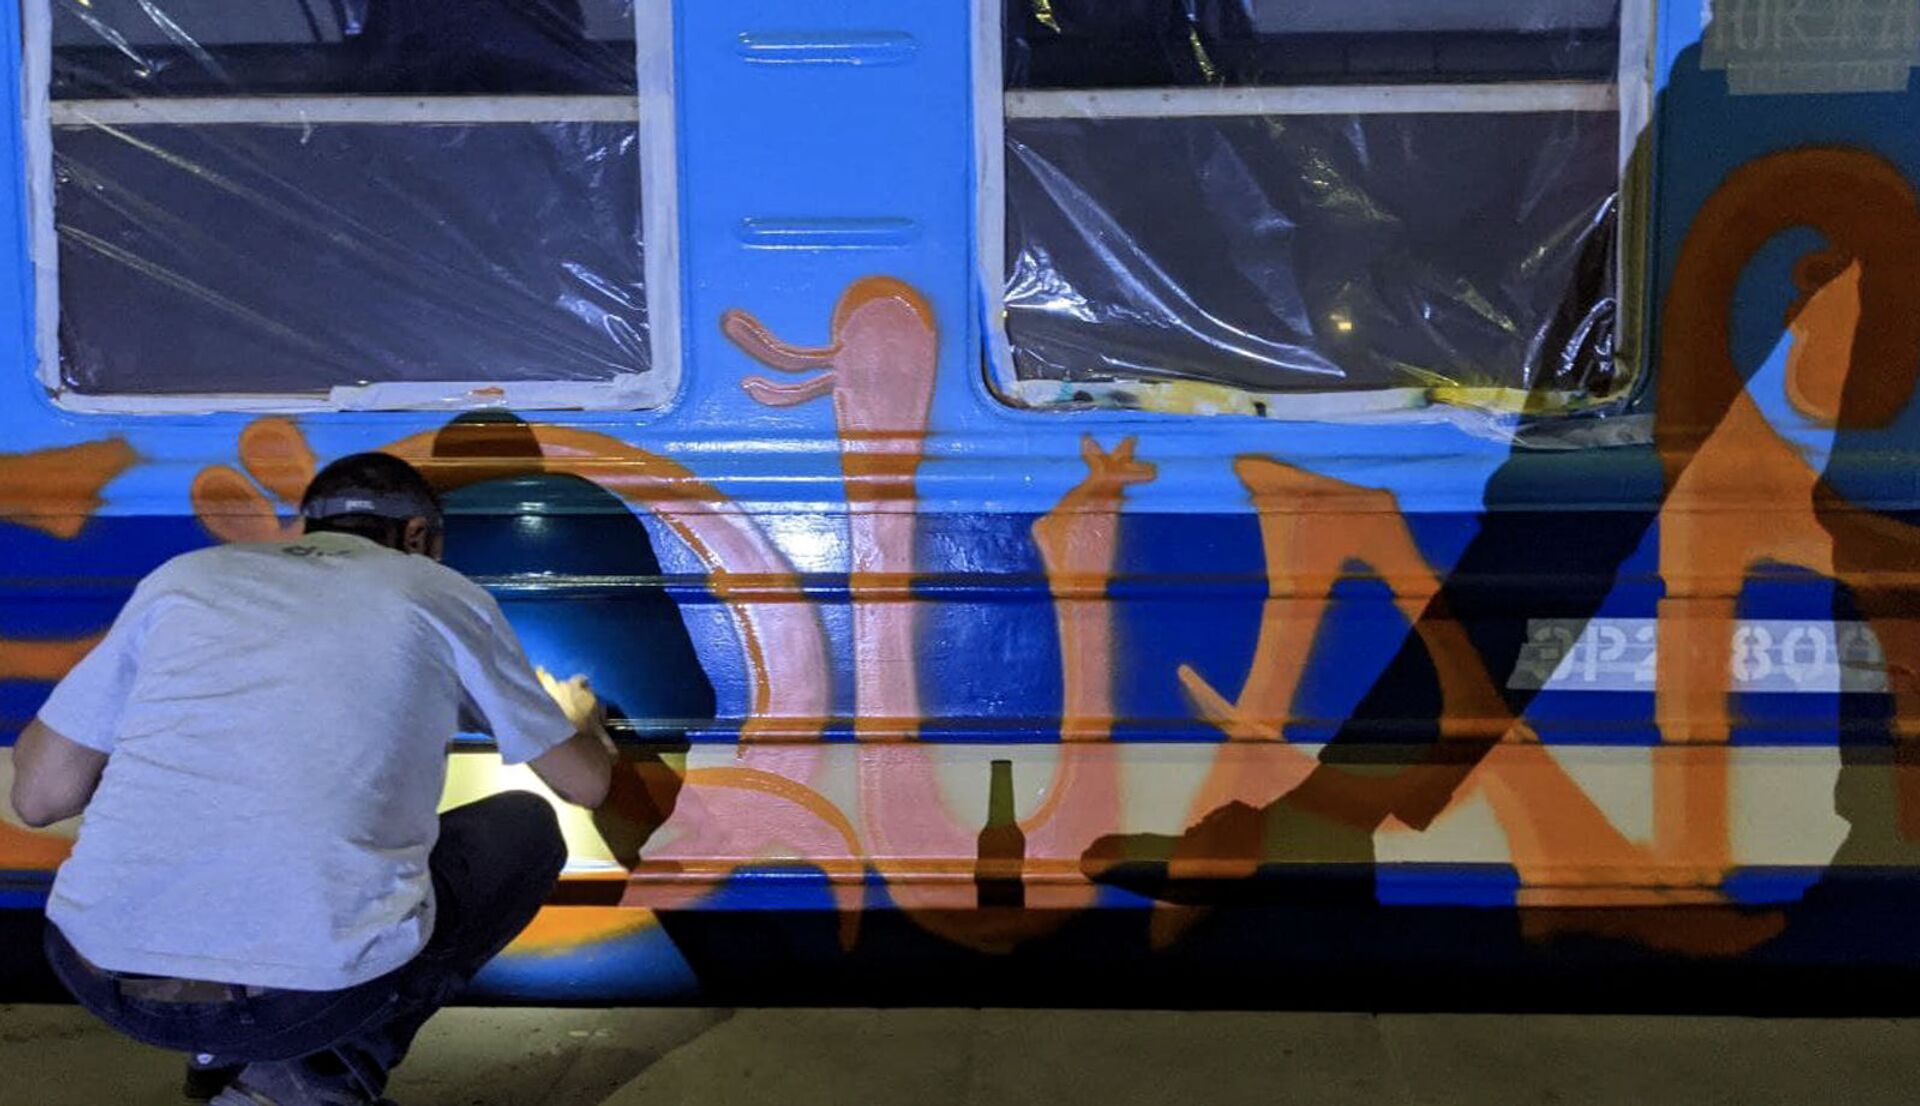 Вагон ЮКЖД, разрисованный в рамках фестиваля Gurban в Гюмри иностранными художниками - Sputnik Արմենիա, 1920, 14.09.2021